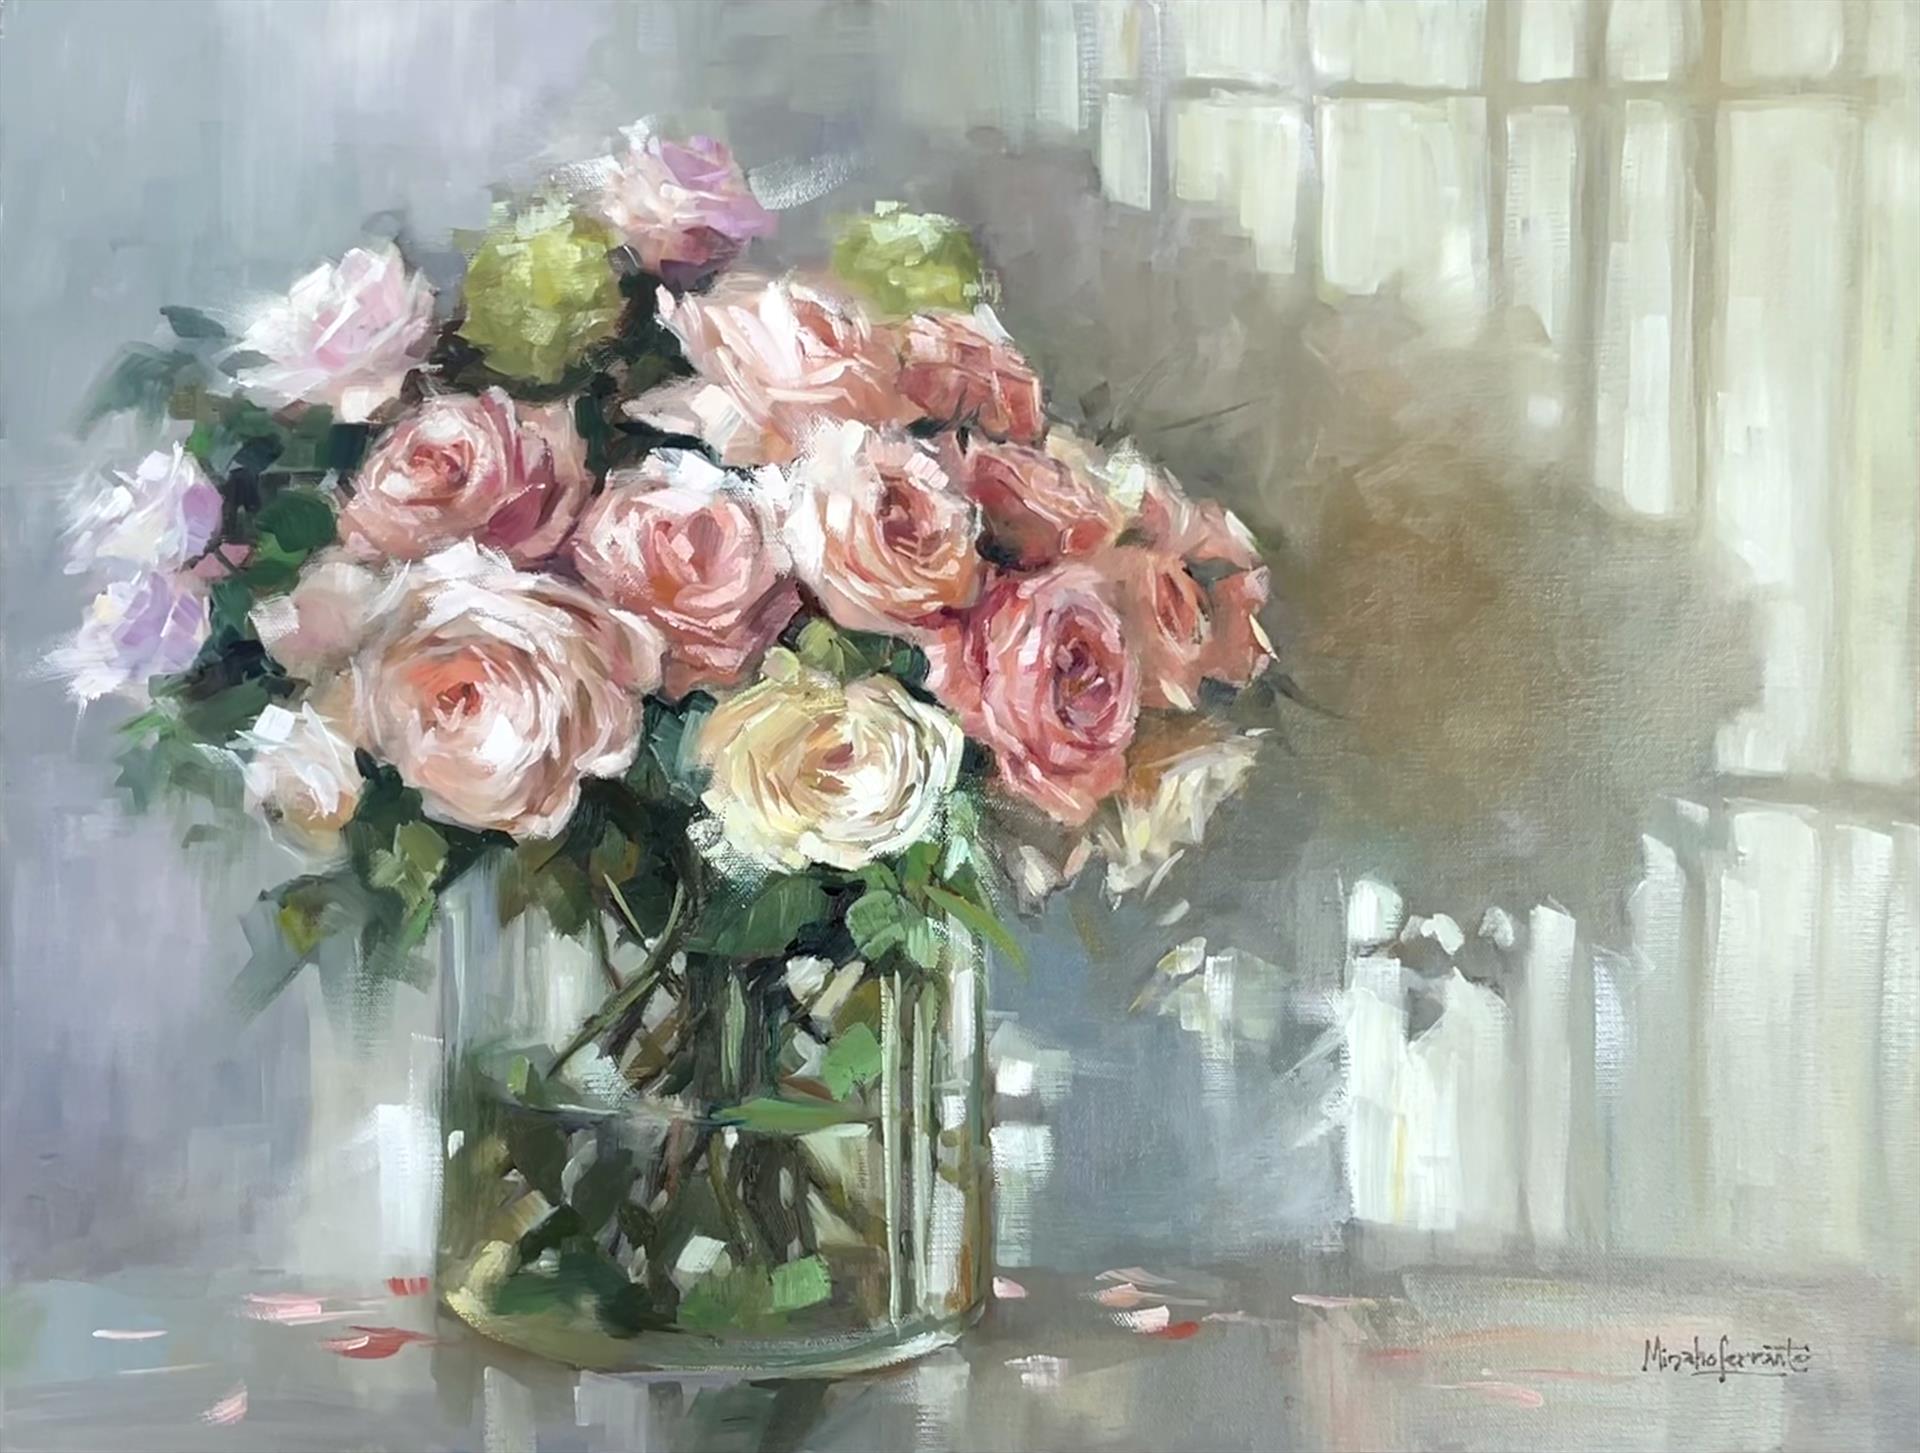 Mina Ferrante - Shadows of the Roses 18x24 Oil on canvas NFS